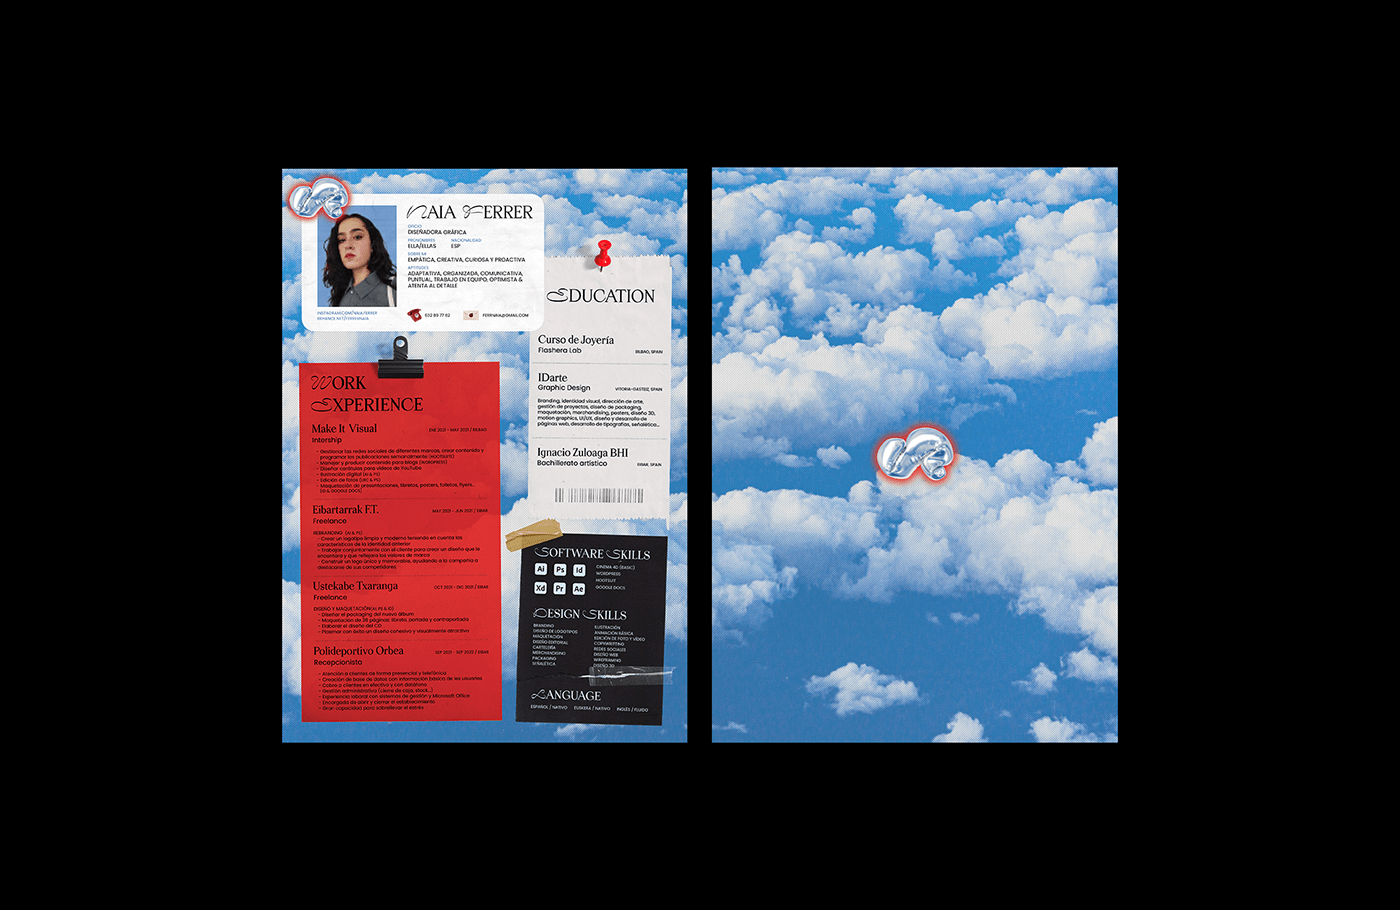 Curriculum Vitae CV cv design designer graphic design  personal branding Resume resume design visual identity Layout